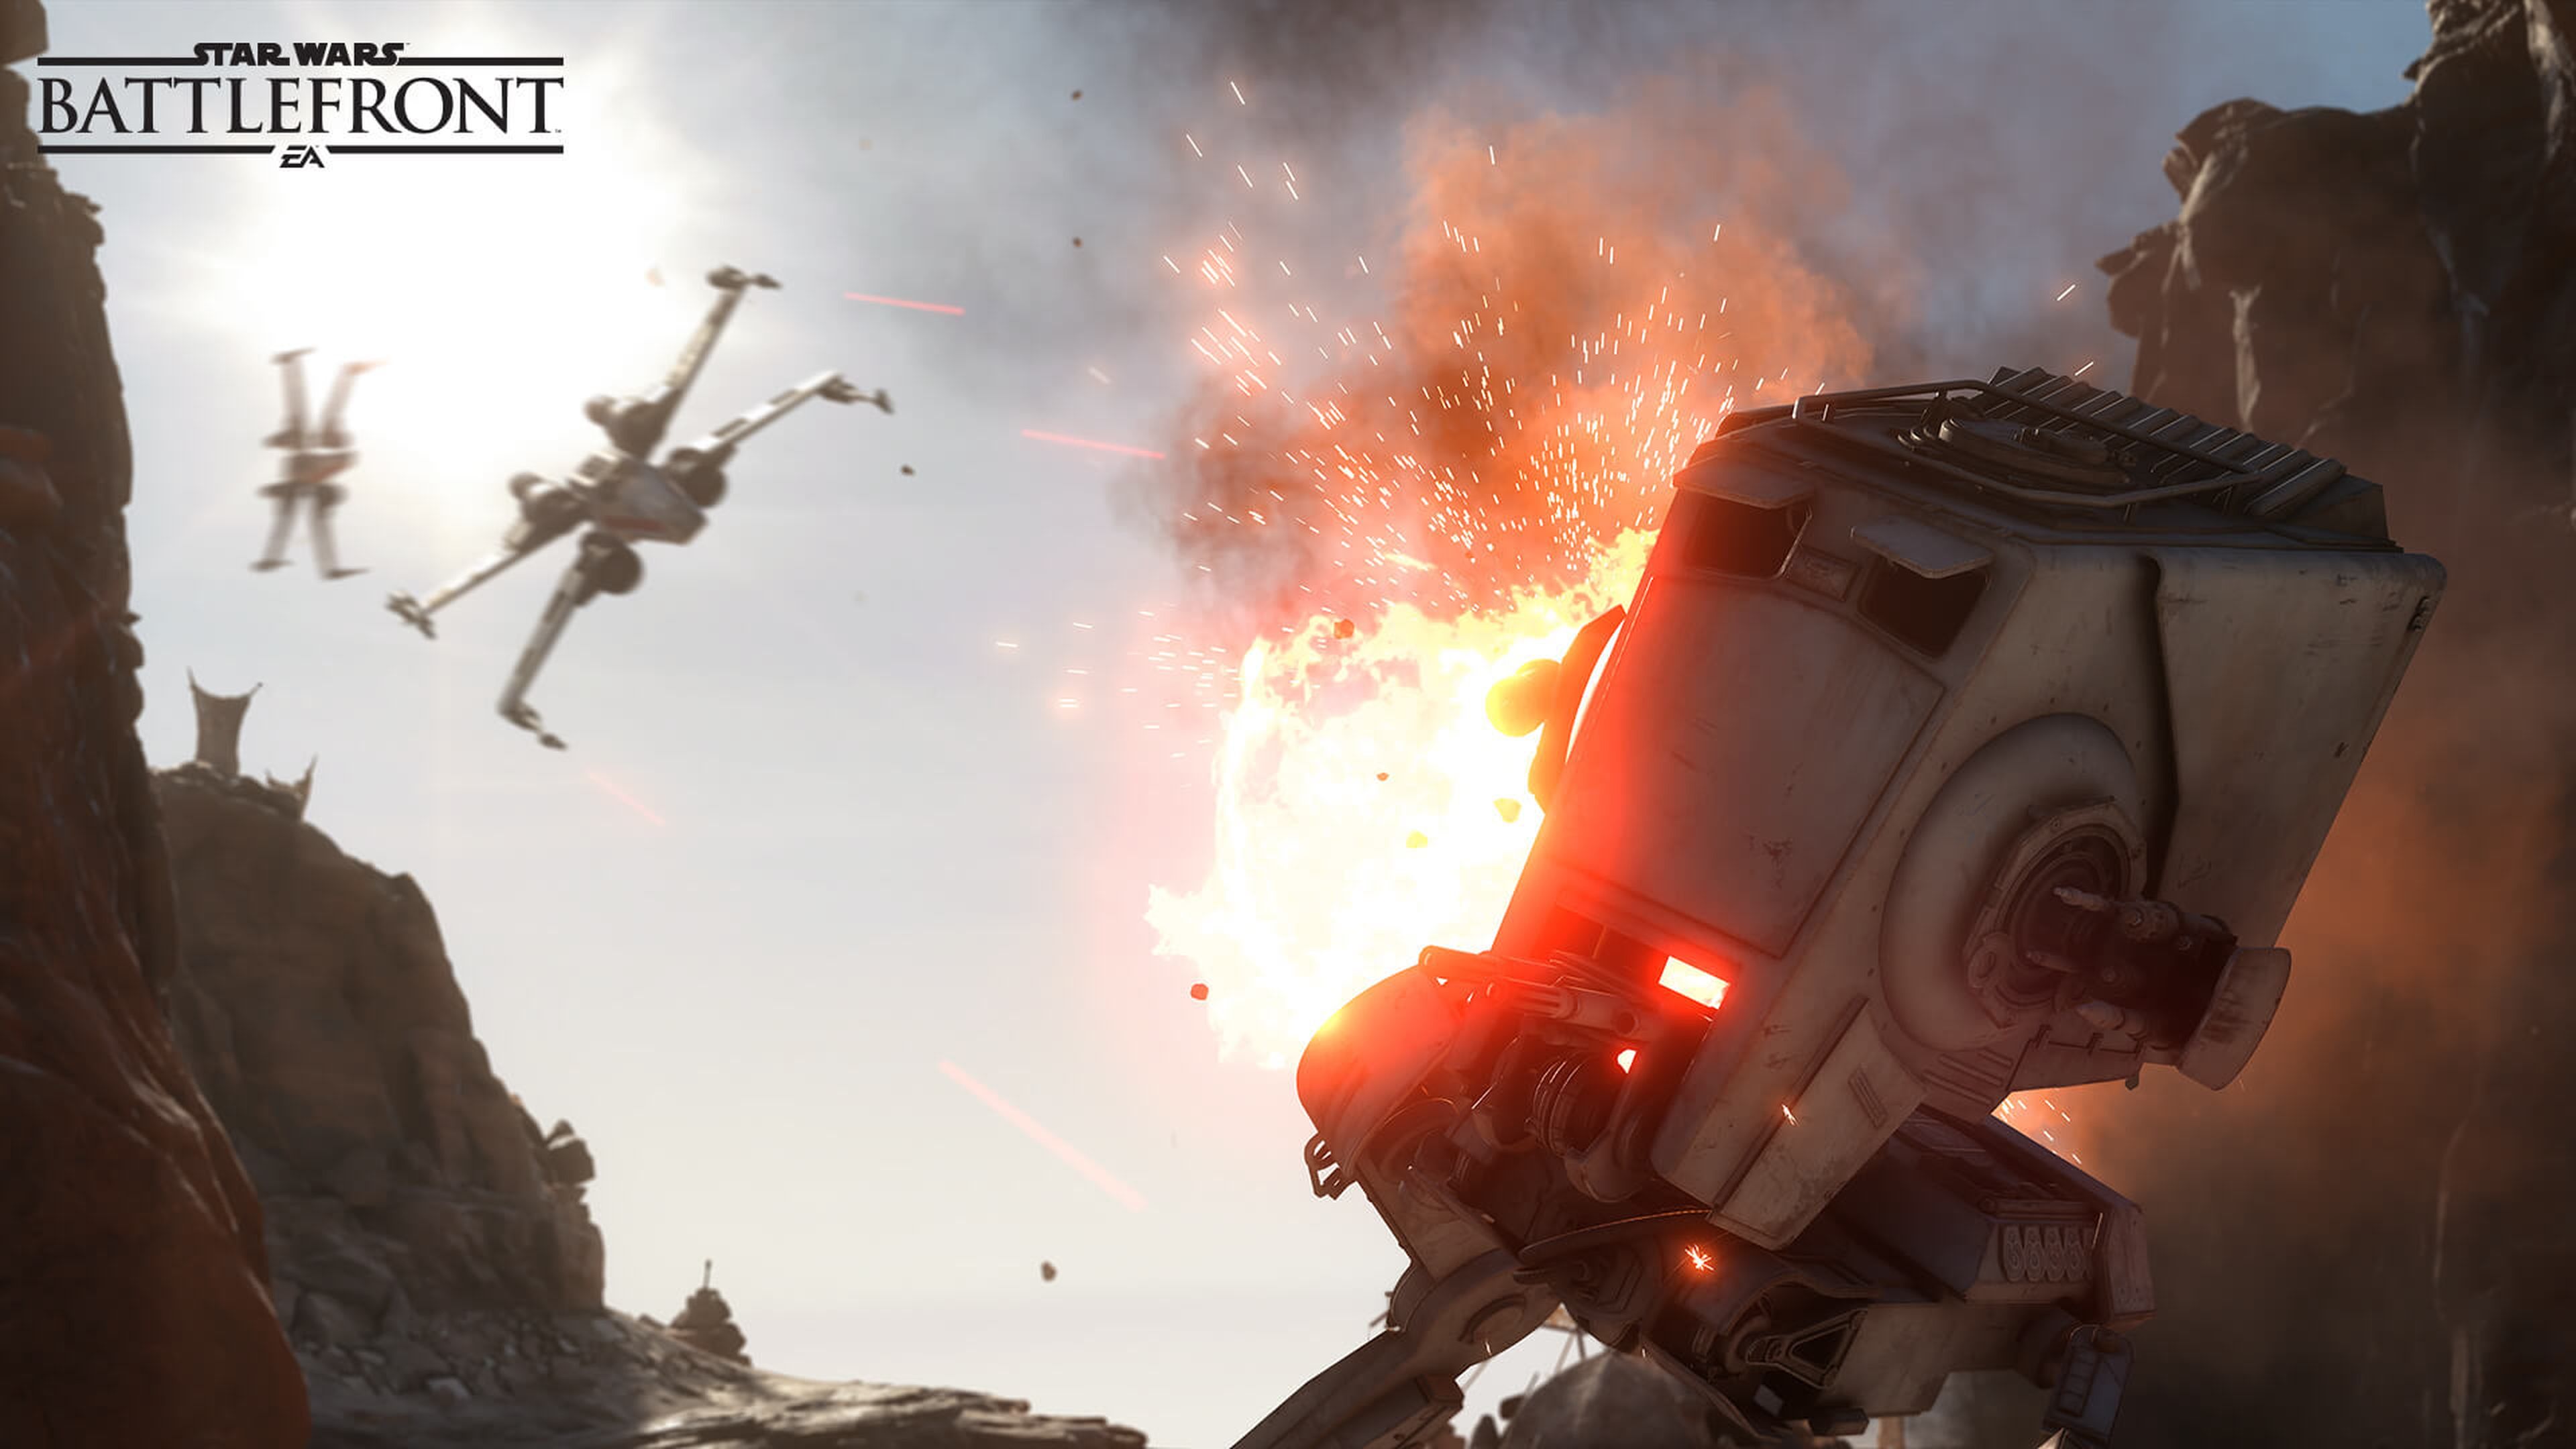 Juegos de Star Wars, los planes de Electronic Arts para el futuro